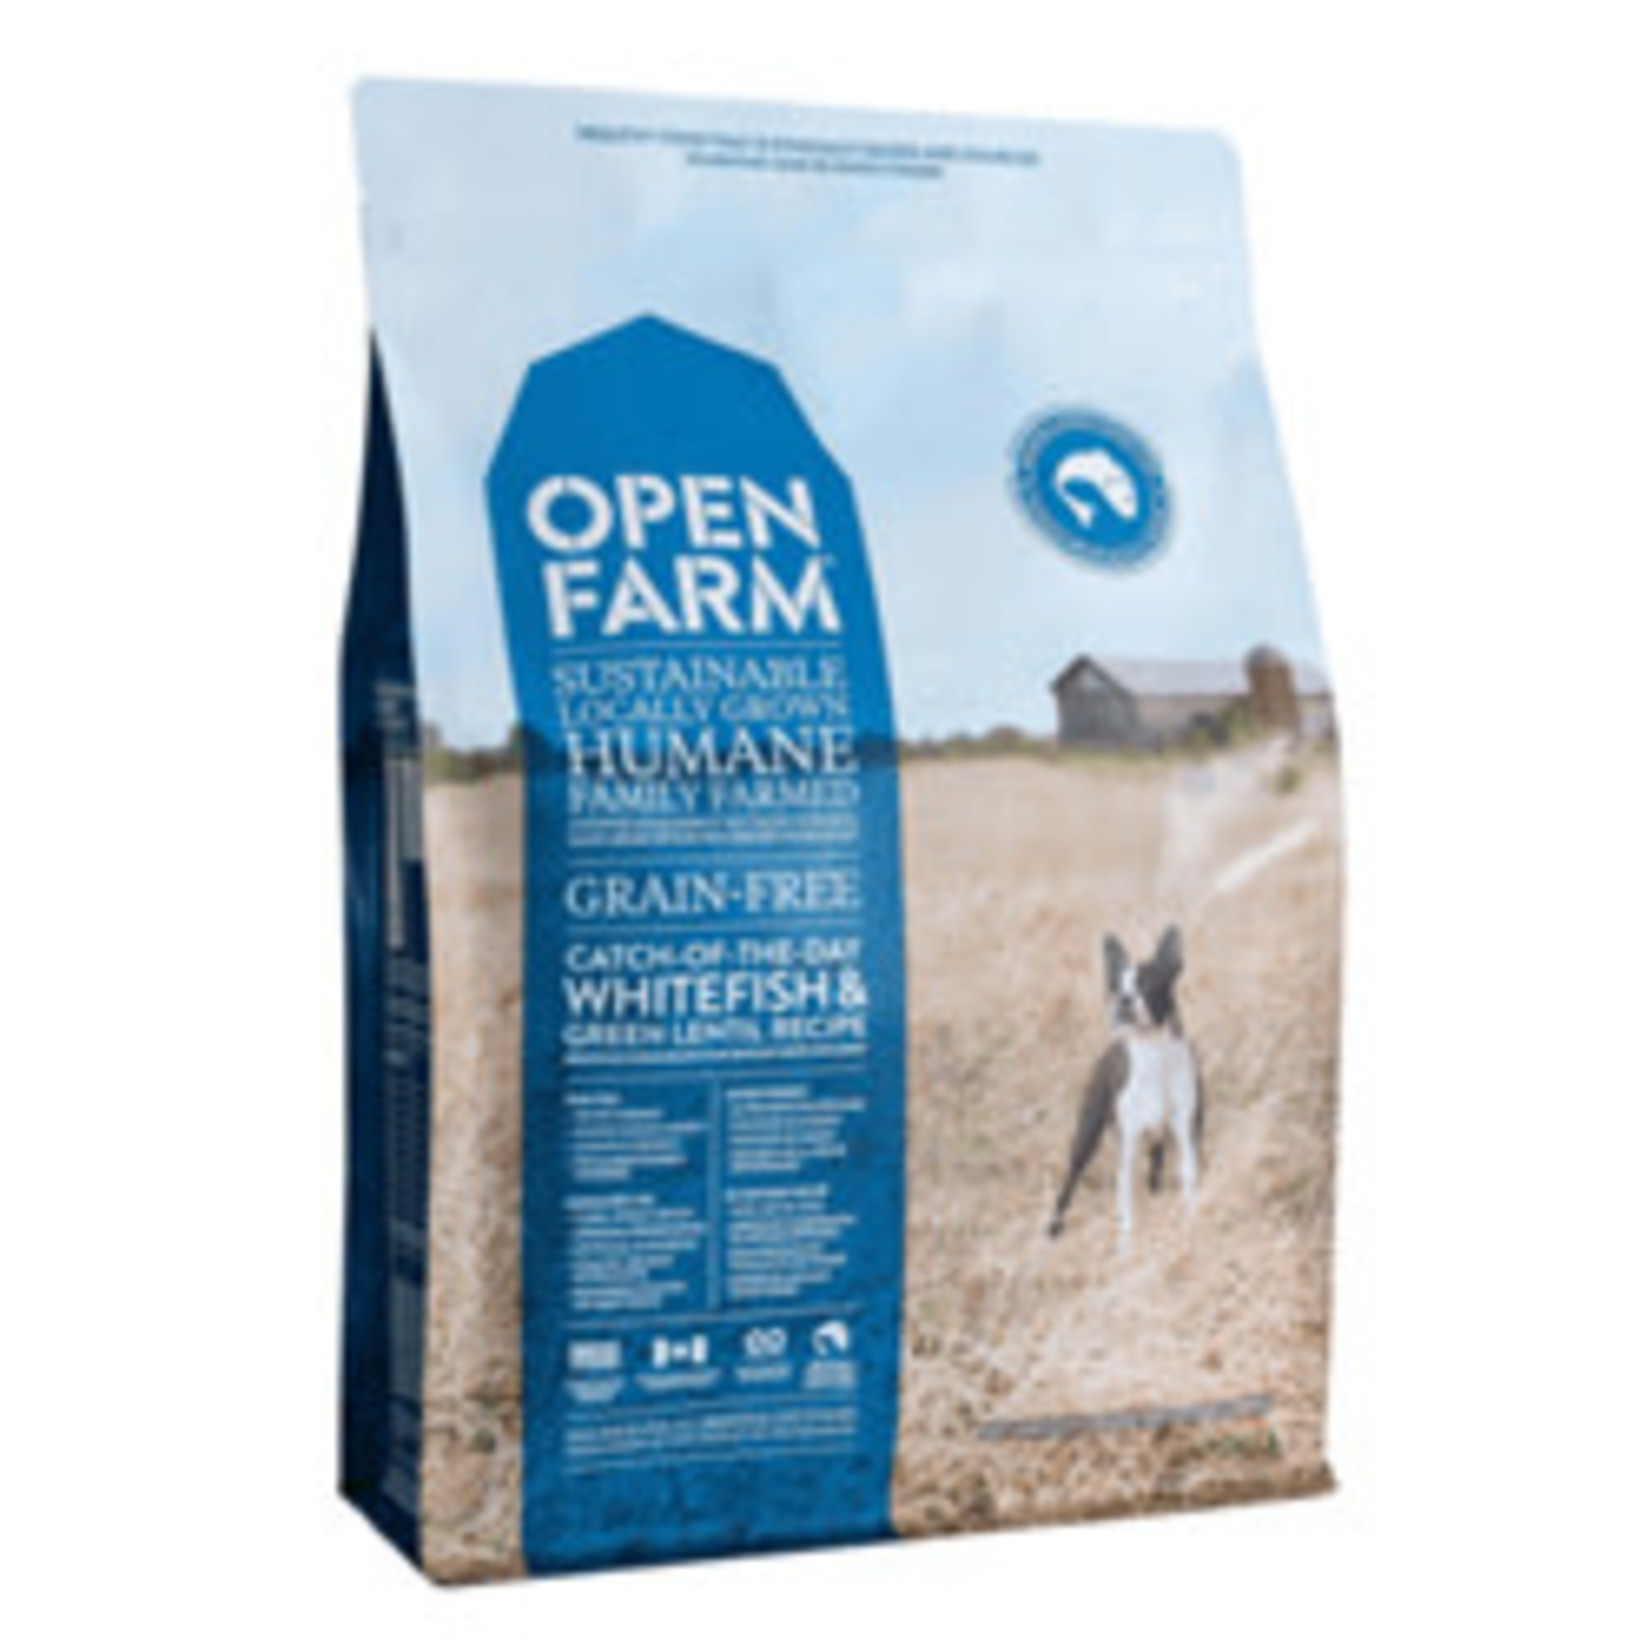 Open Farm Grain Free Catch of the Season Whitefish Dog 24# Open Farm